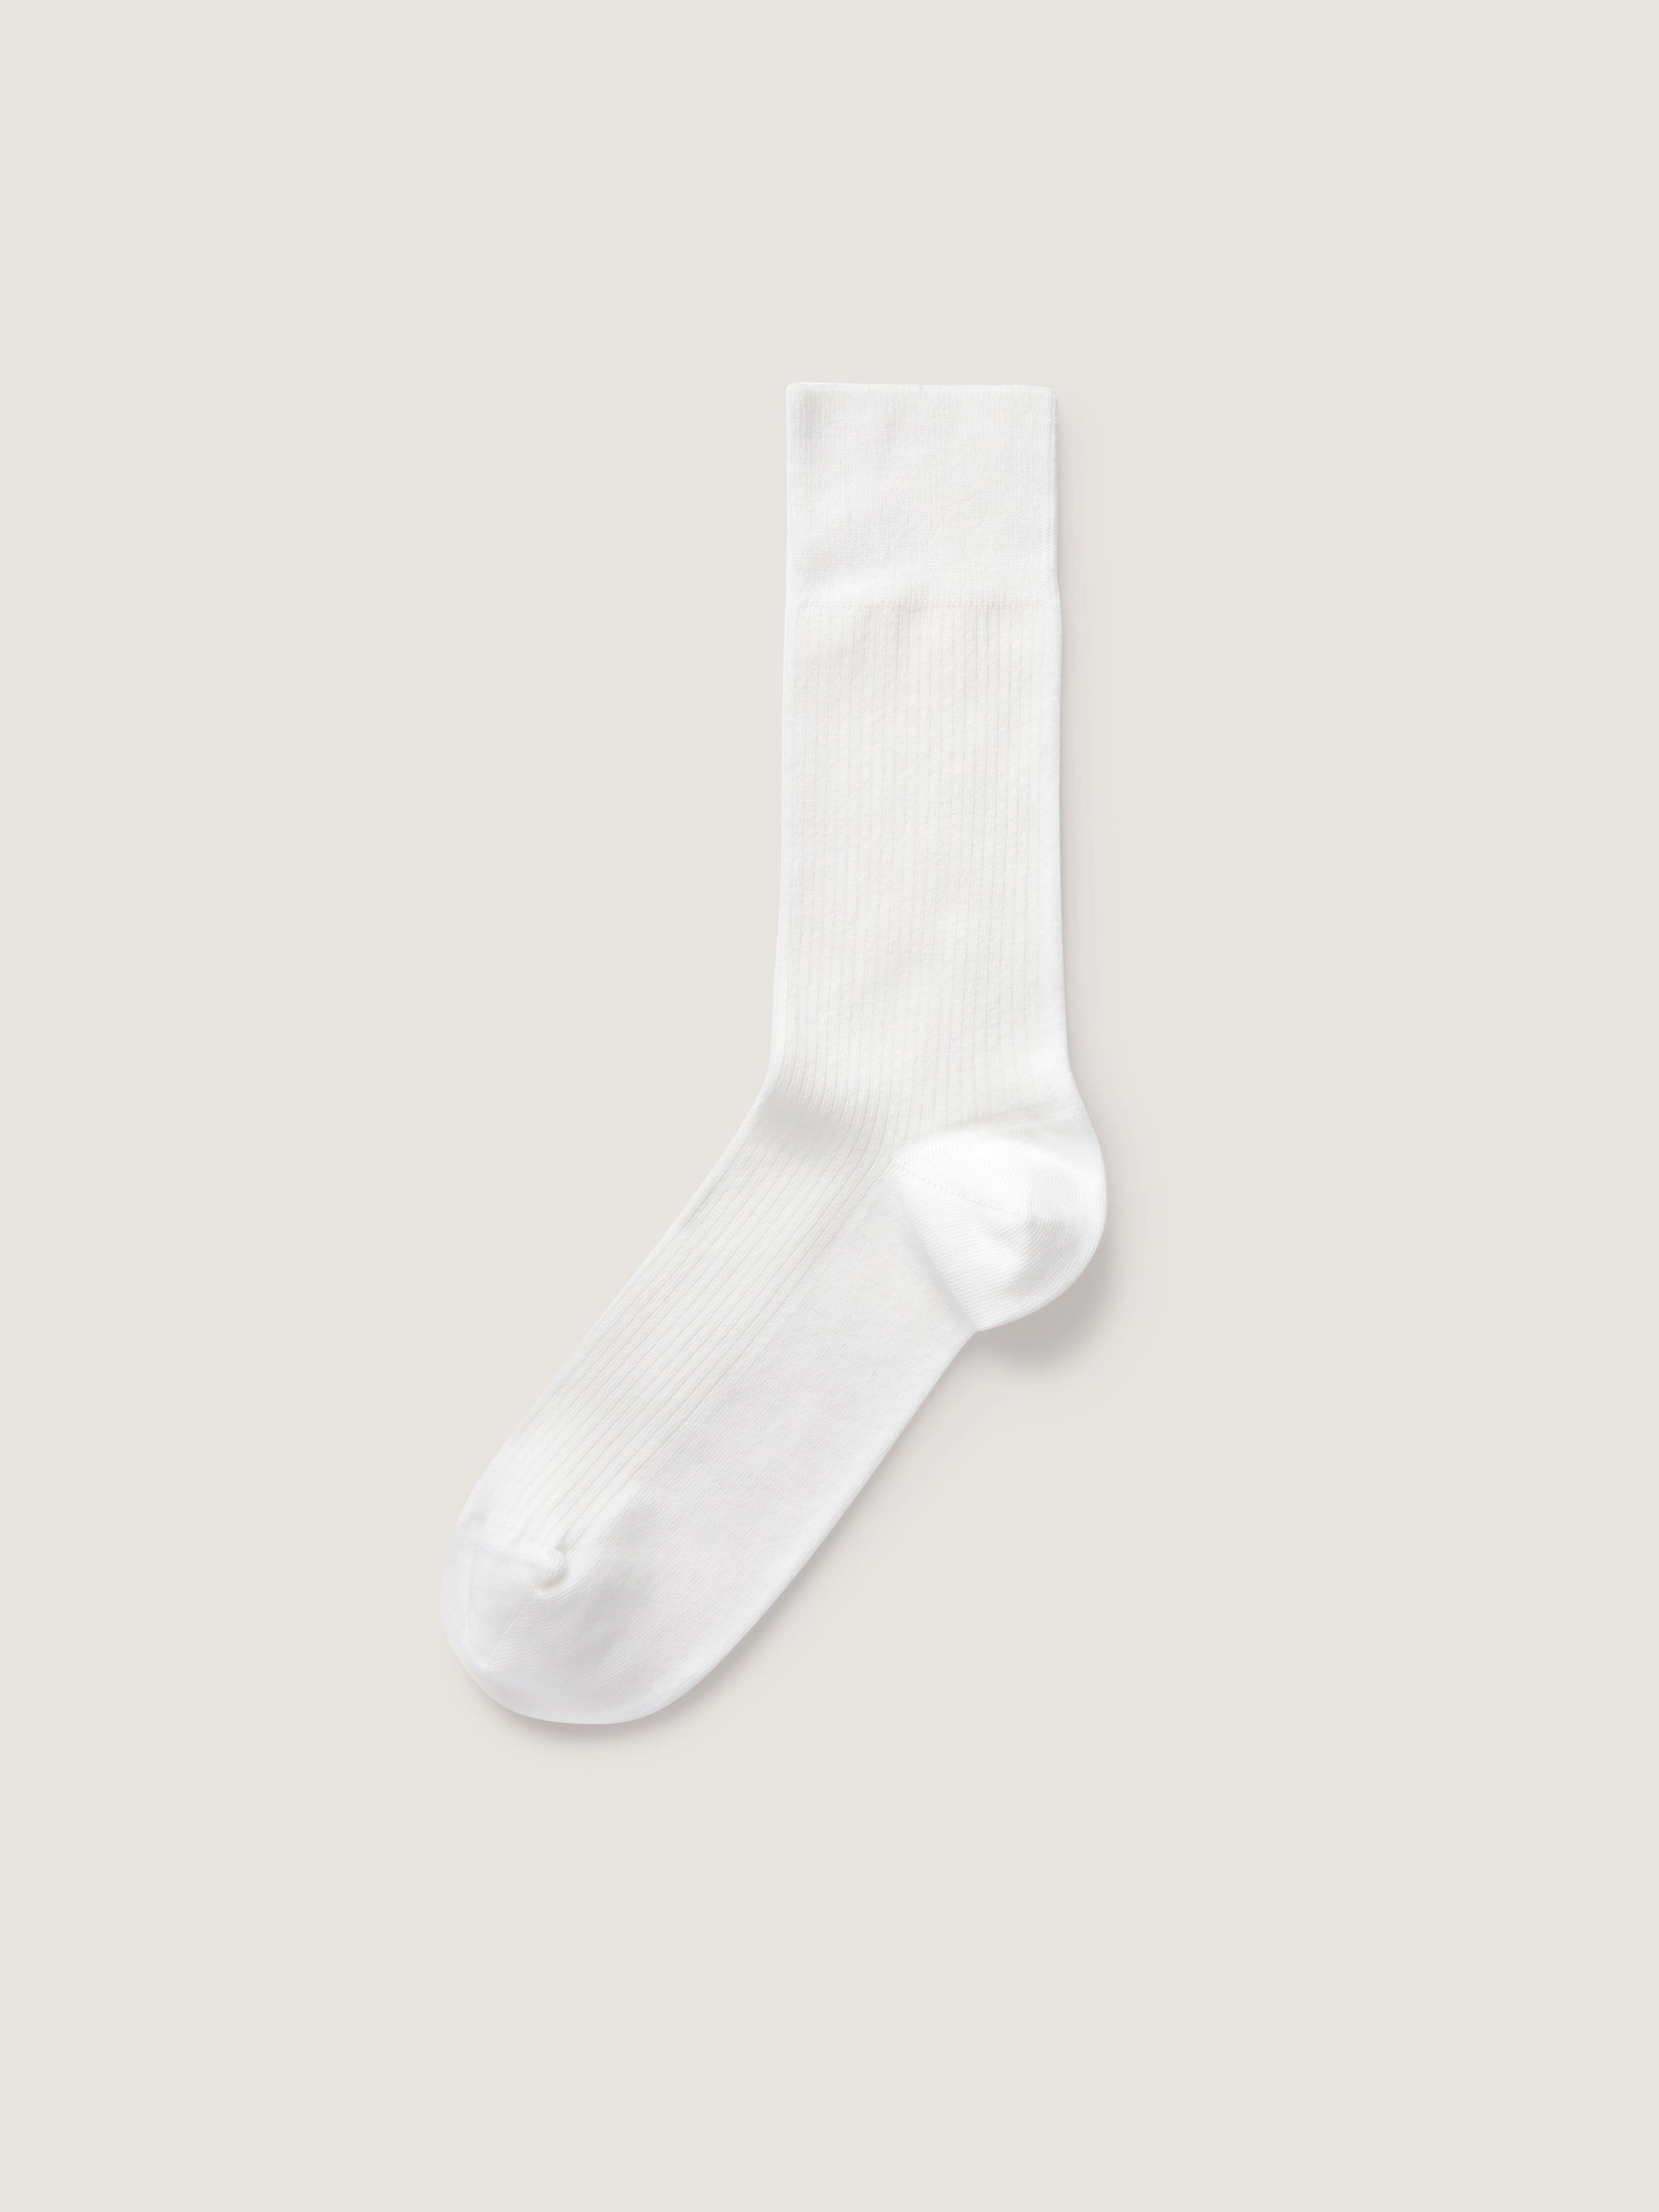 Haz un esfuerzo Determinar con precisión Peregrino white sock Lágrimas  Recomendado Deliberar